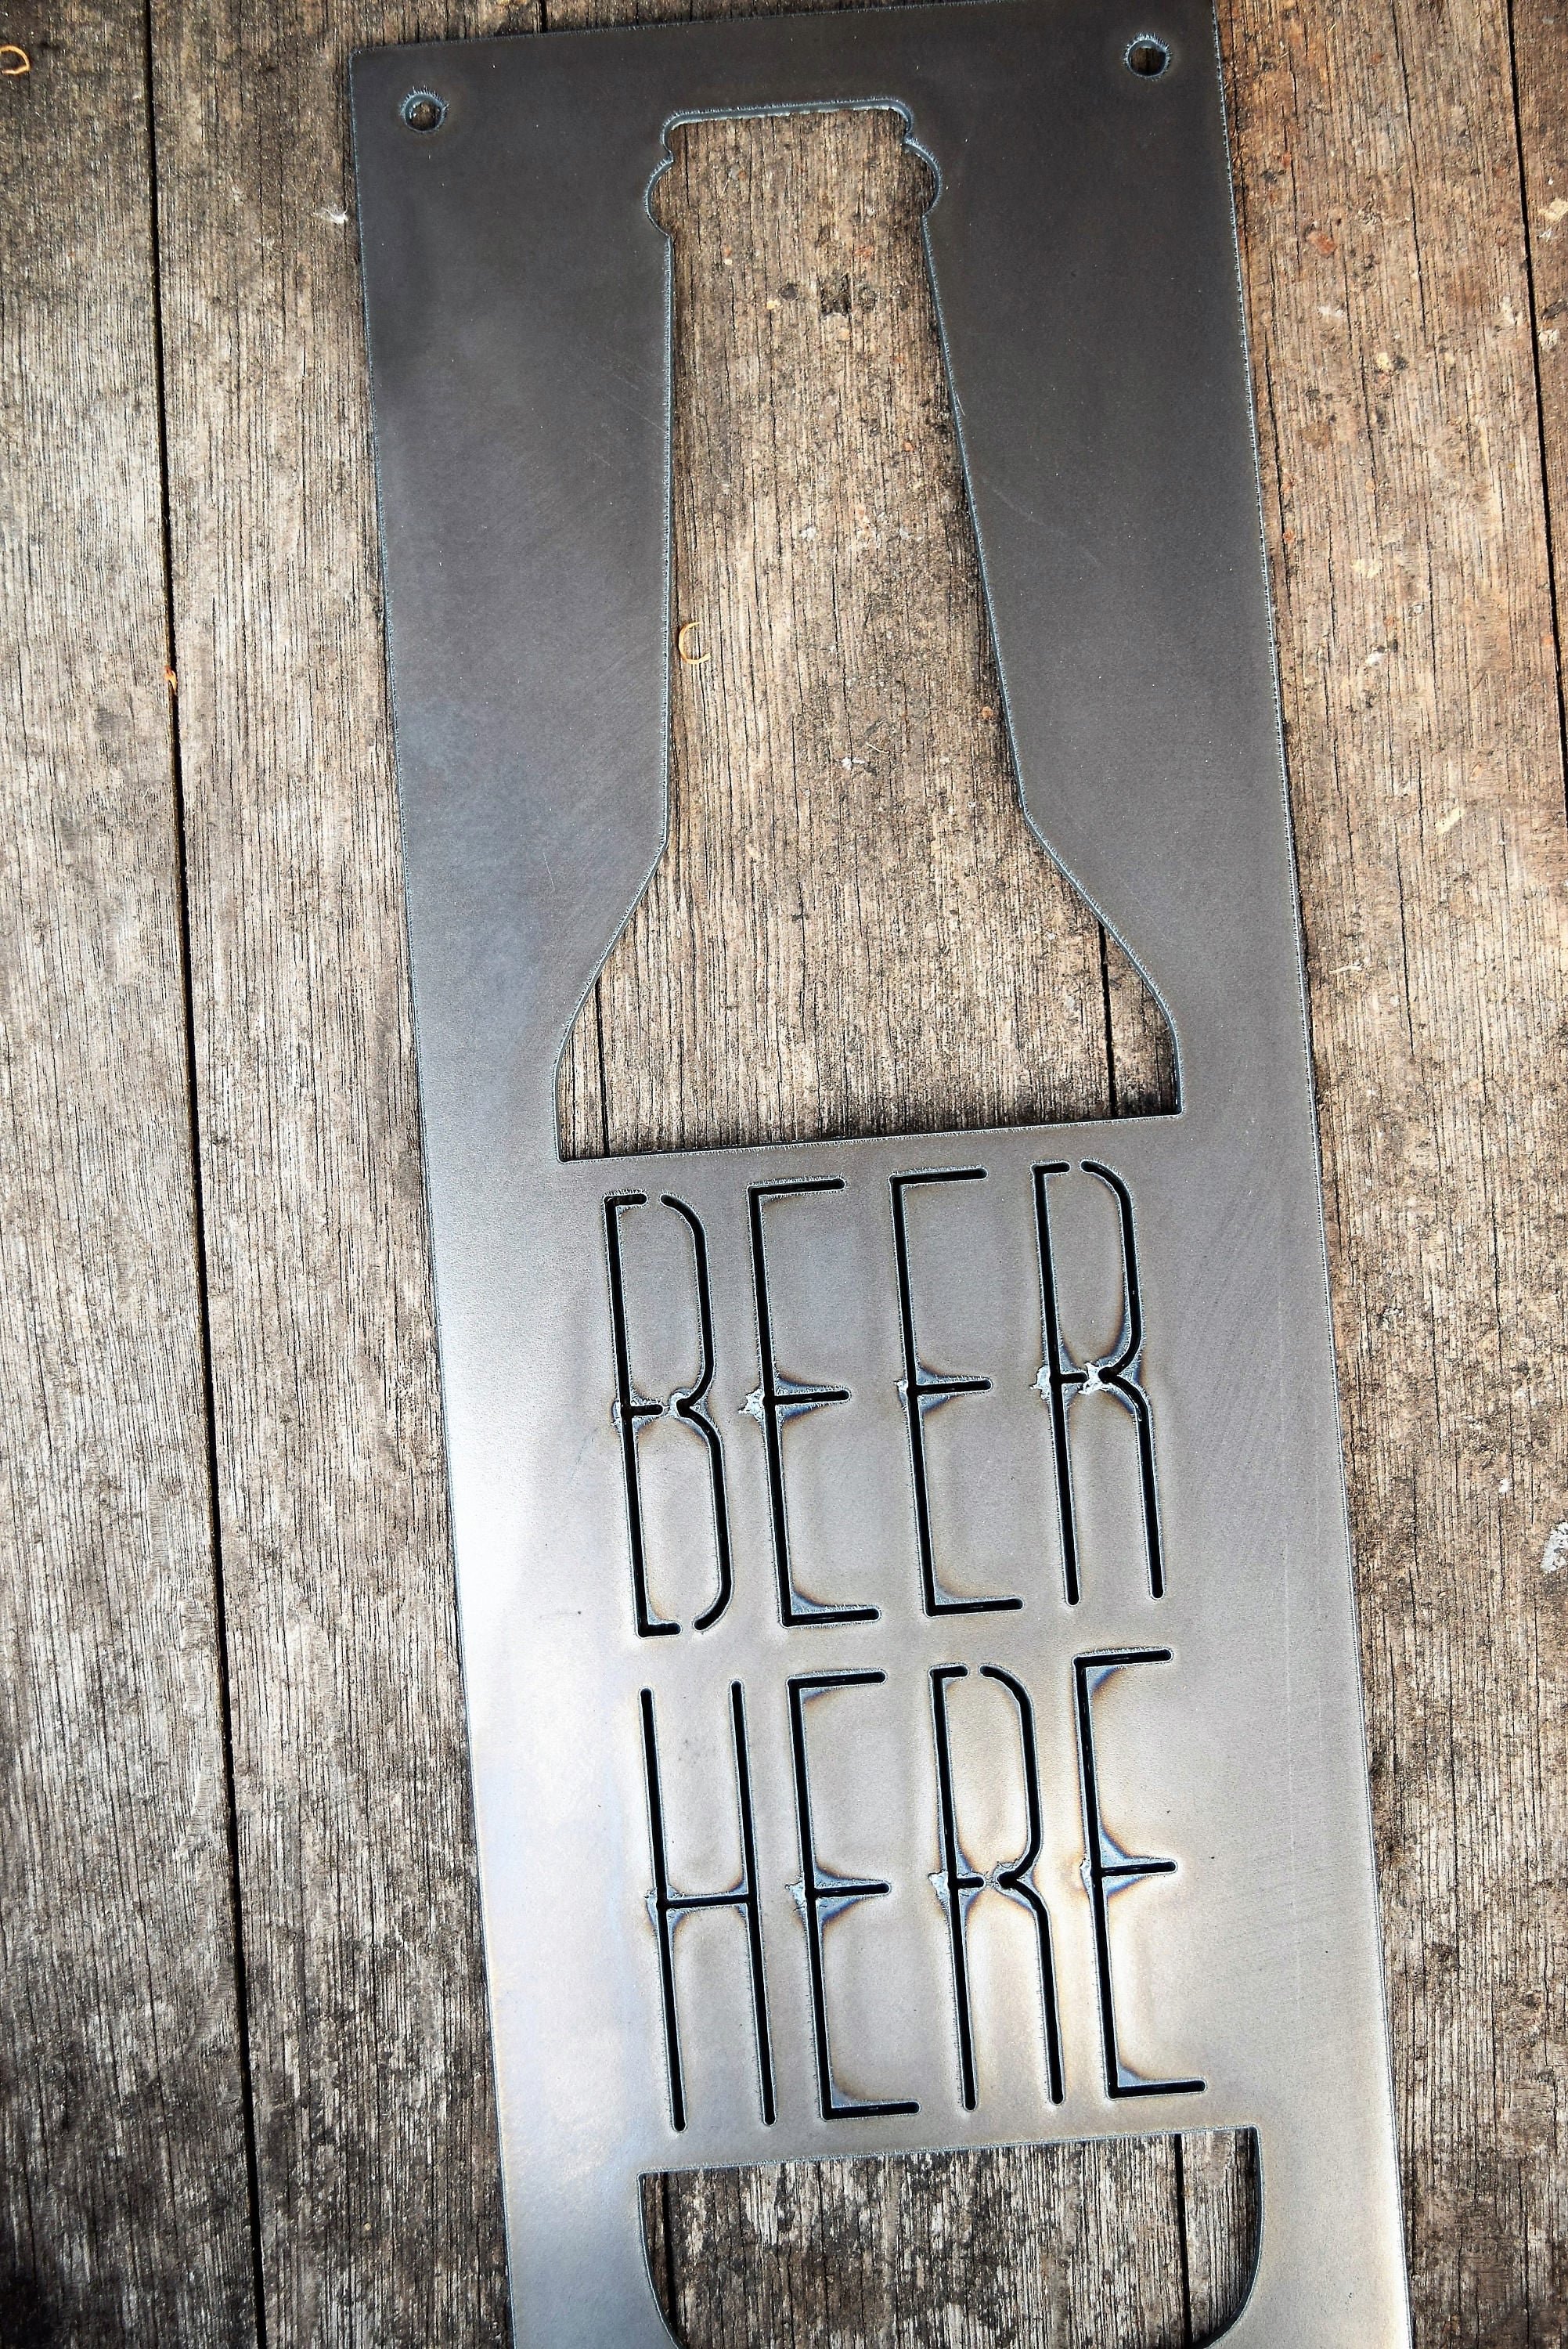 Beer Here Metal Sign